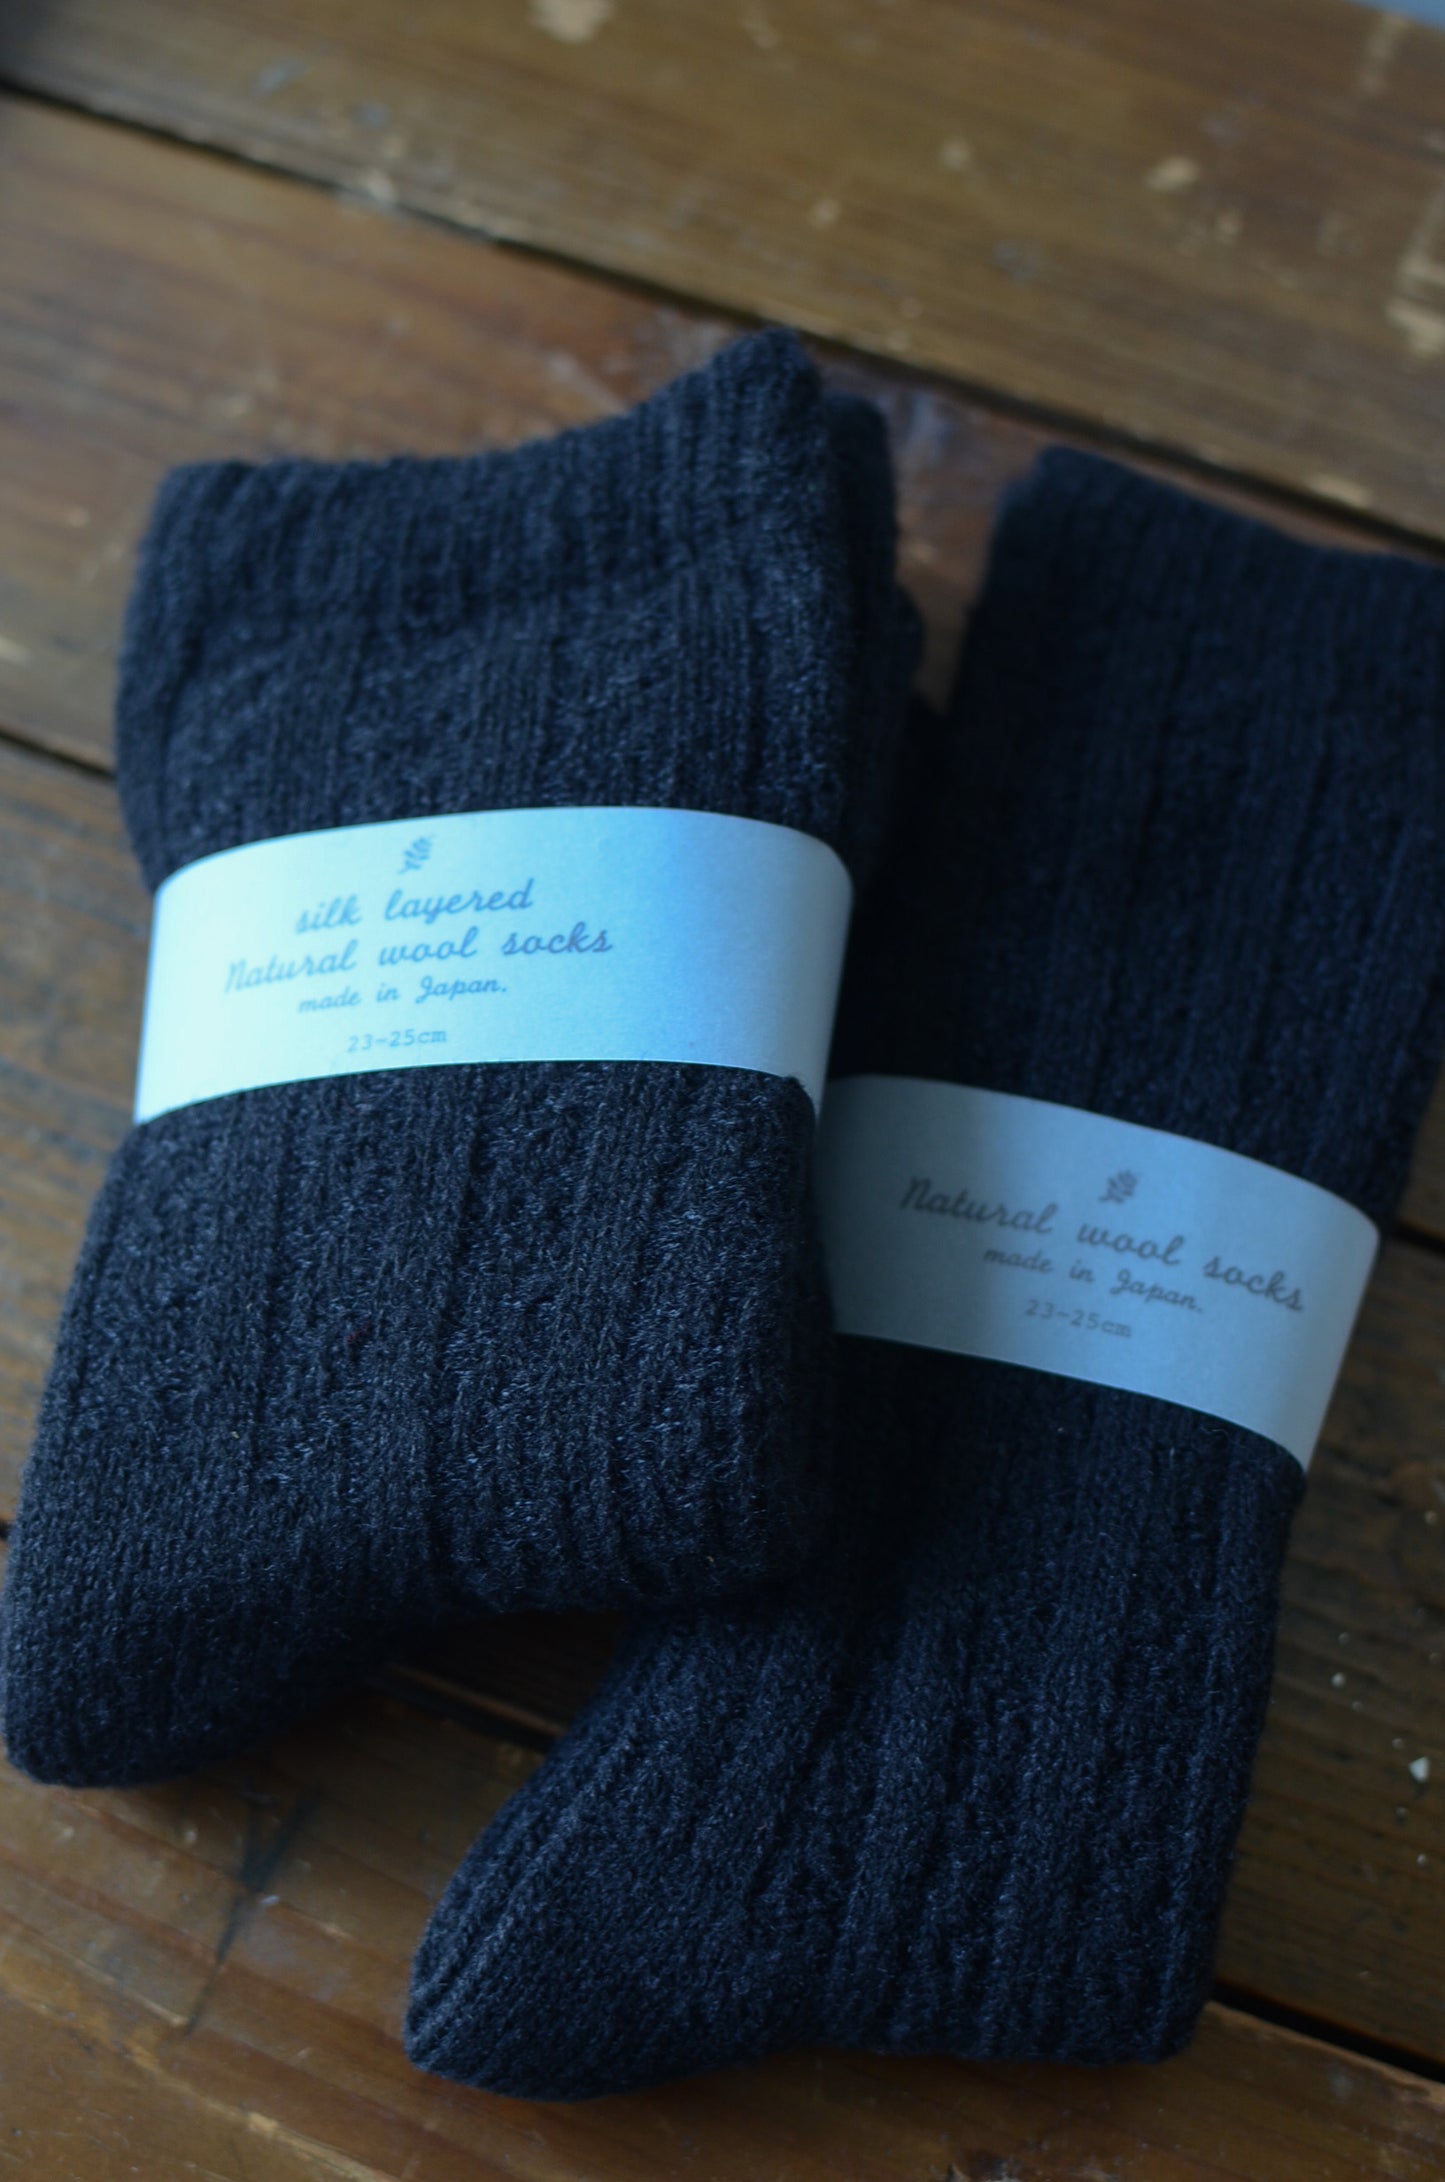 Silk layered Natural wool socks.